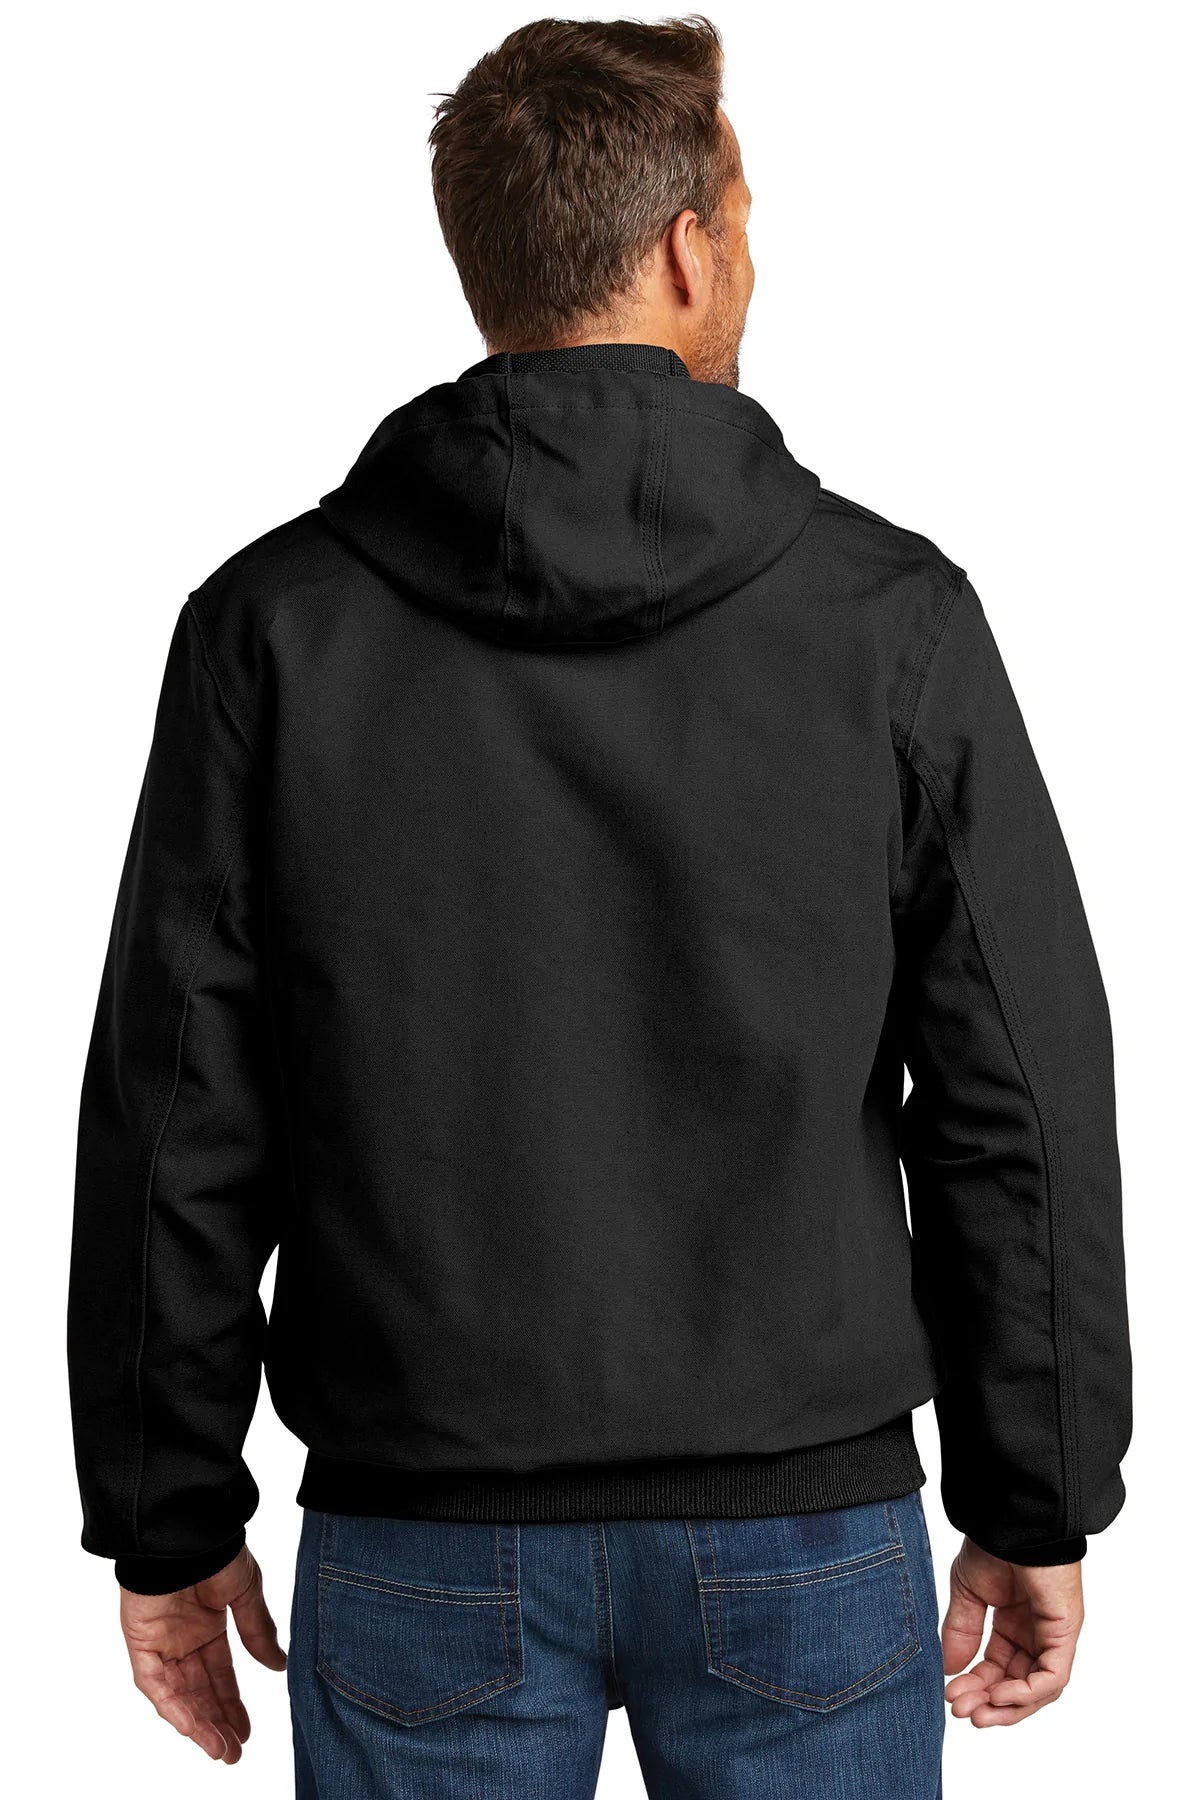 carhartt_ctj131 _black_company_logo_jackets